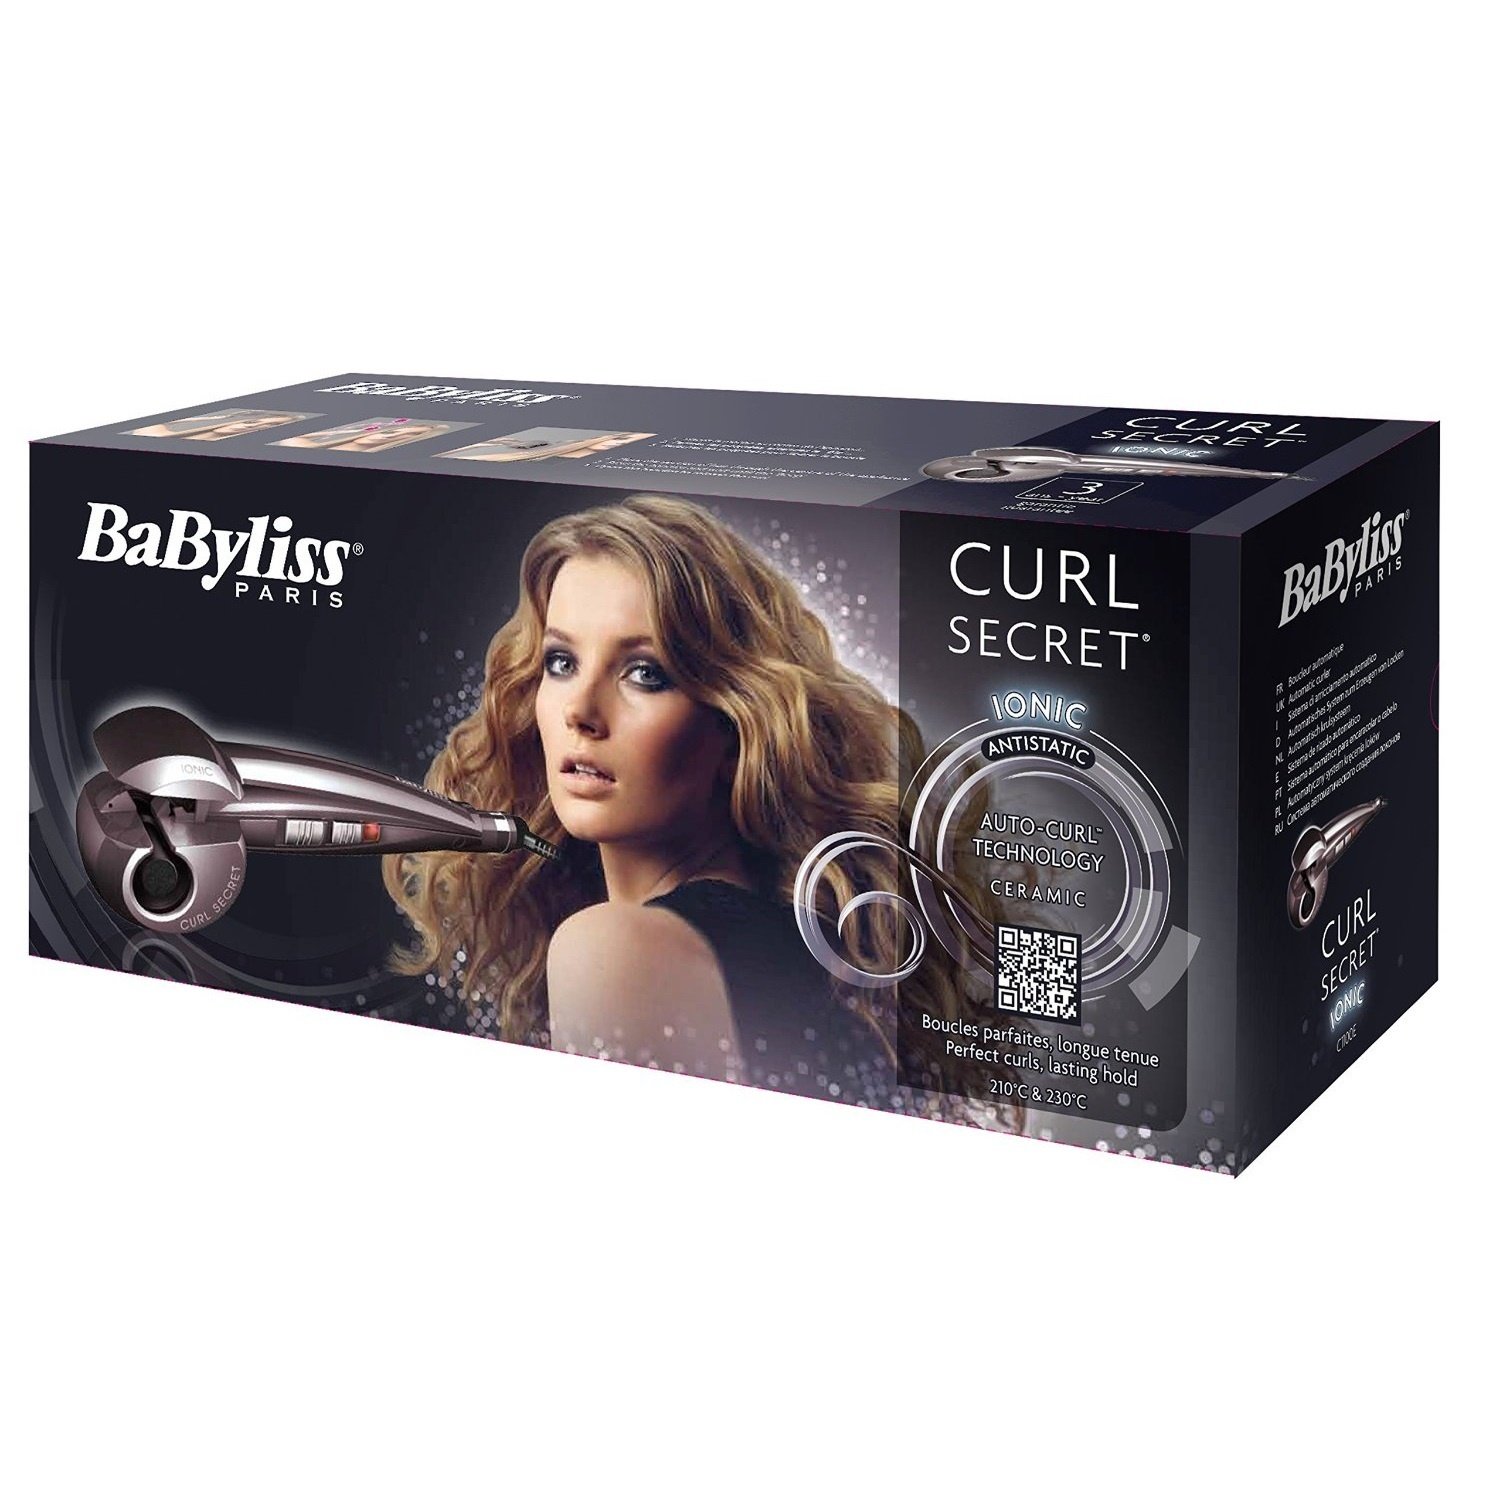 Curl e. BABYLISS Curl Secret c1100e. BABYLISS Curl Secret c1101e. BABYLISS c1050e. BABYLISS 2667u Secret Curl Styler.